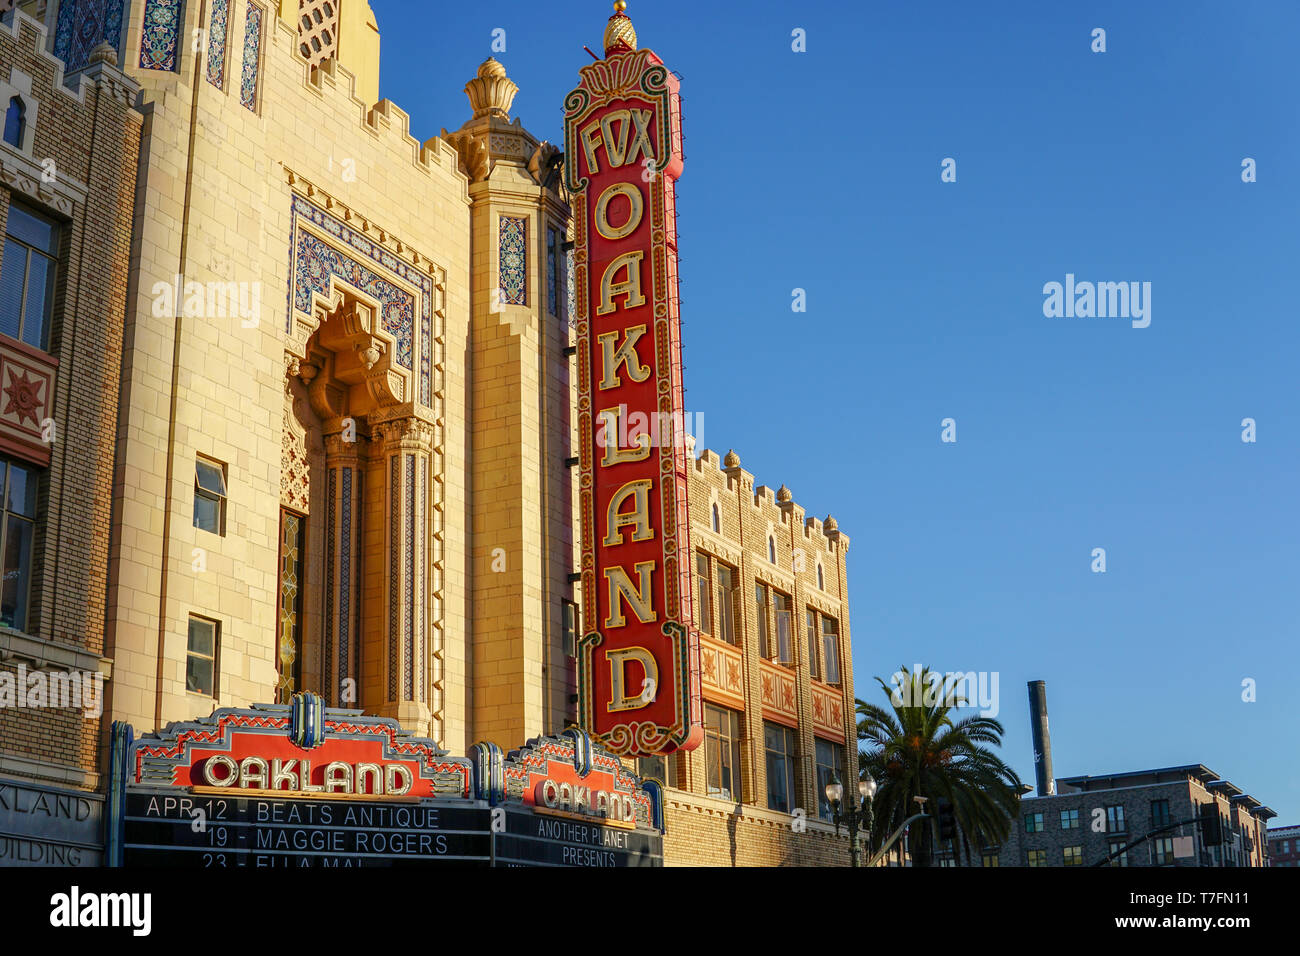 OAKLAND, Kalifornien - 13. APRIL 2019: Am Morgen die Sonne erhebt sich auf den ikonischen Fox Oakland Theater, Konzertsaal und ehemaligen Kino in der Innenstadt von Oa Stockfoto